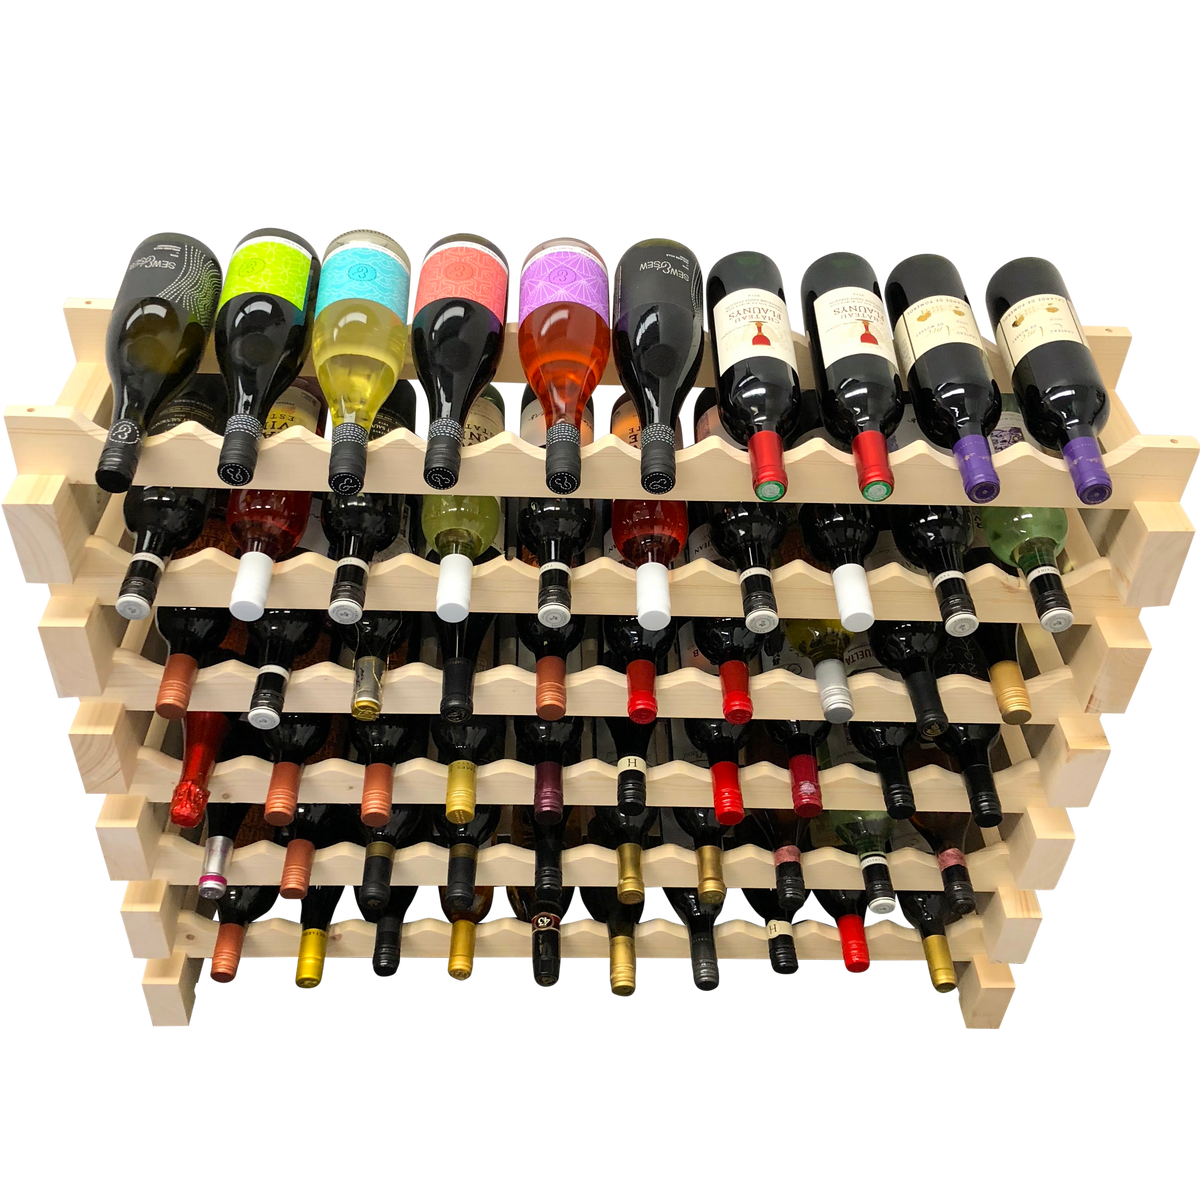 60 Bottle Modular Wine Rack Kit (10 Bottles Wide X 6 Bottles High) - Wine Stash USA